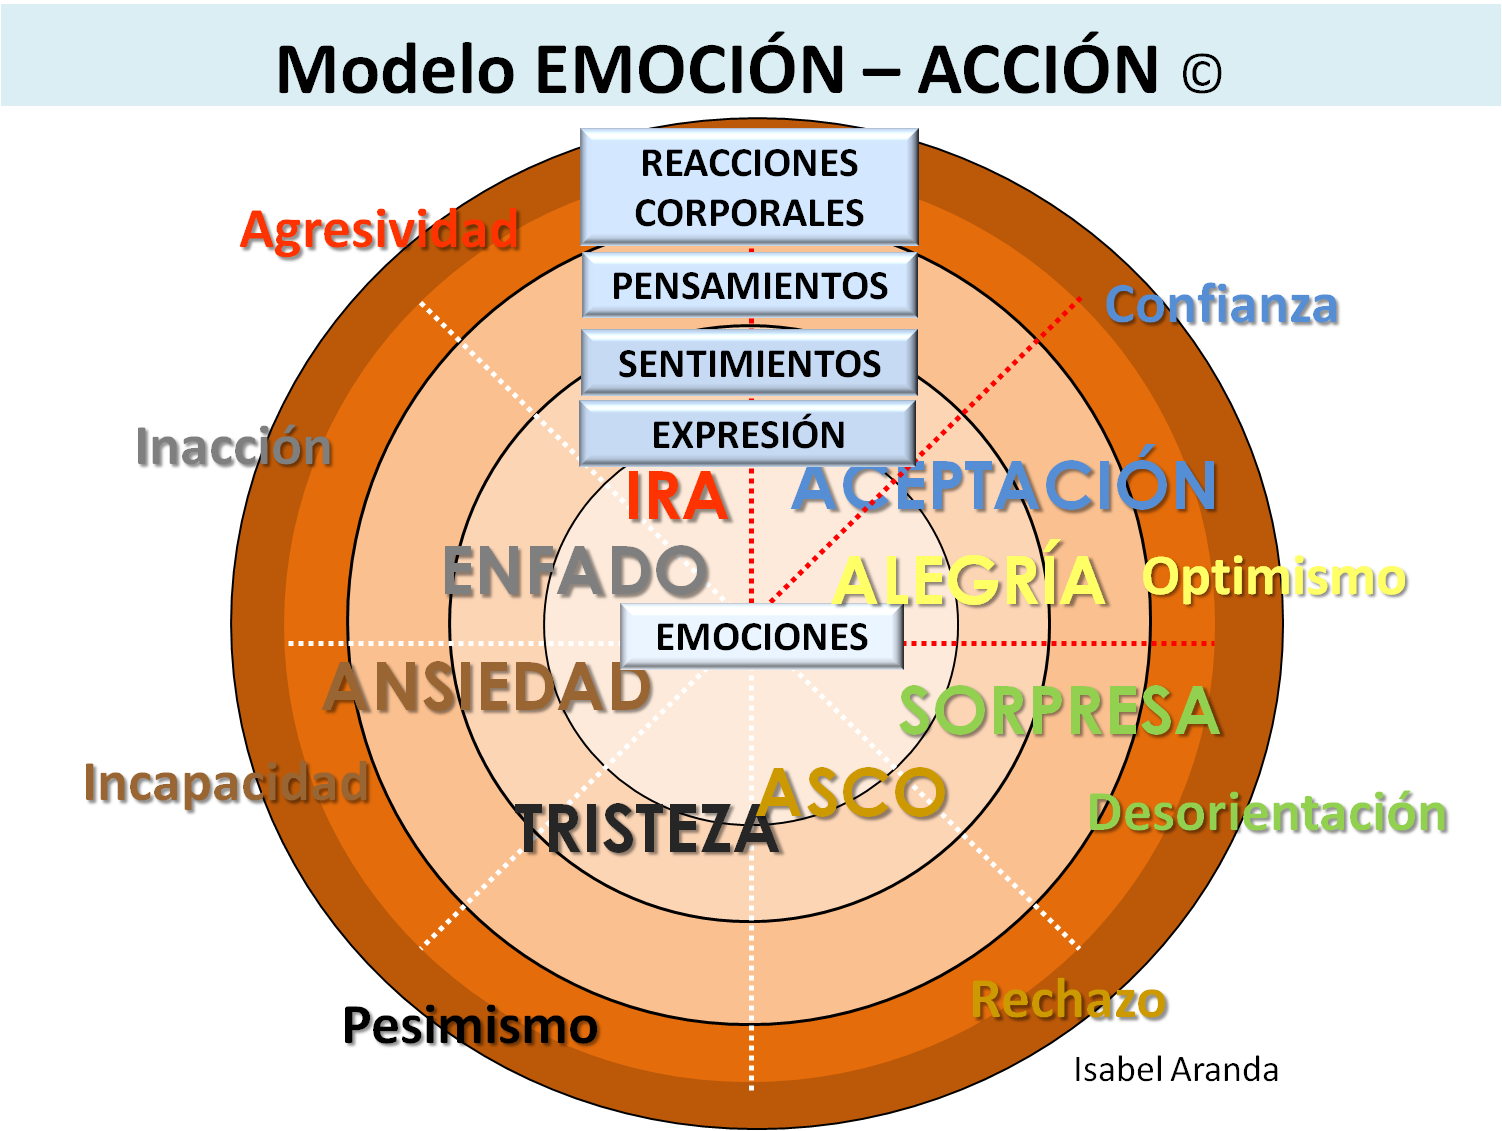 modelo de emociones